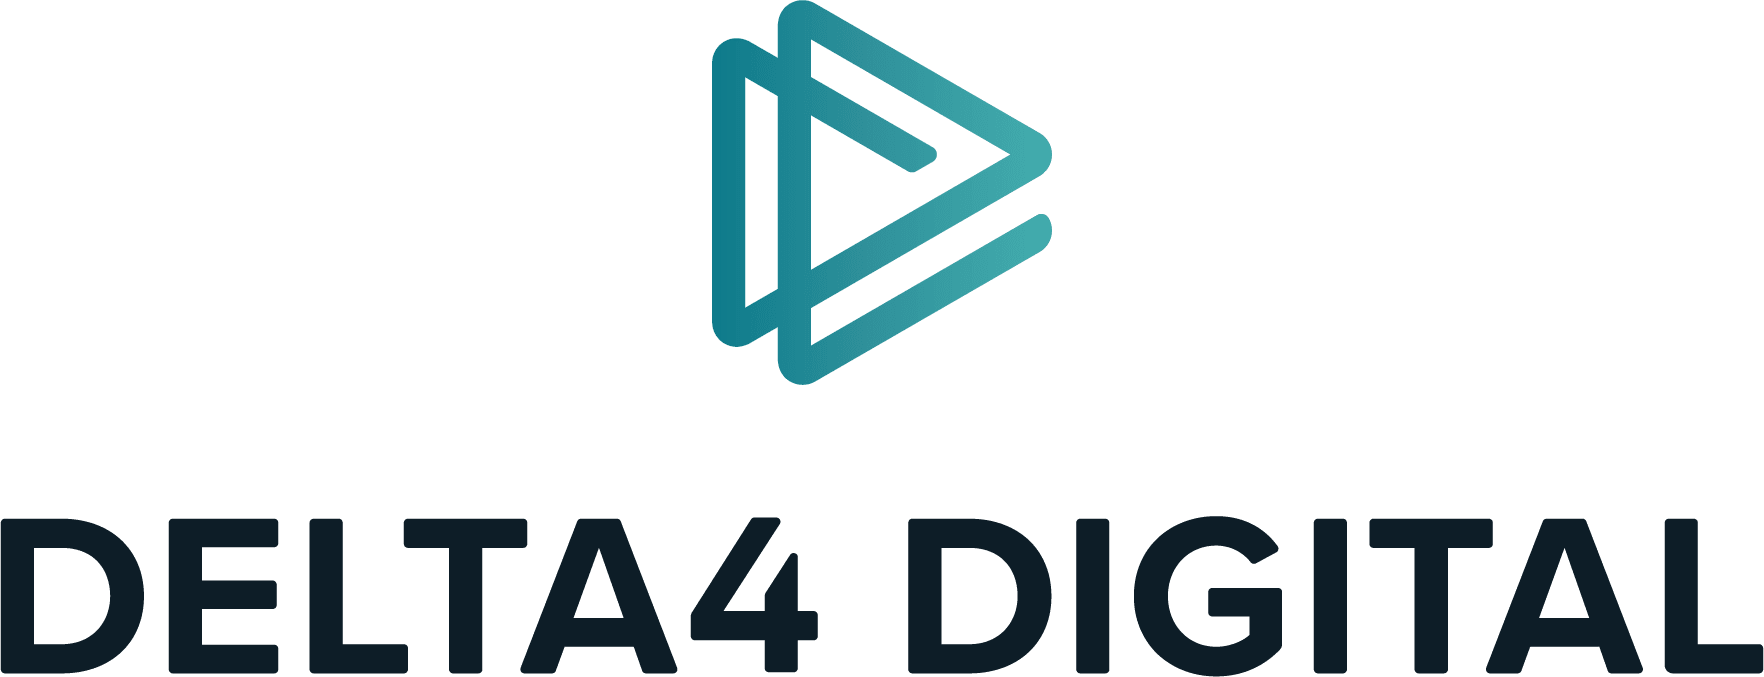 Delta4 Digital Inc.